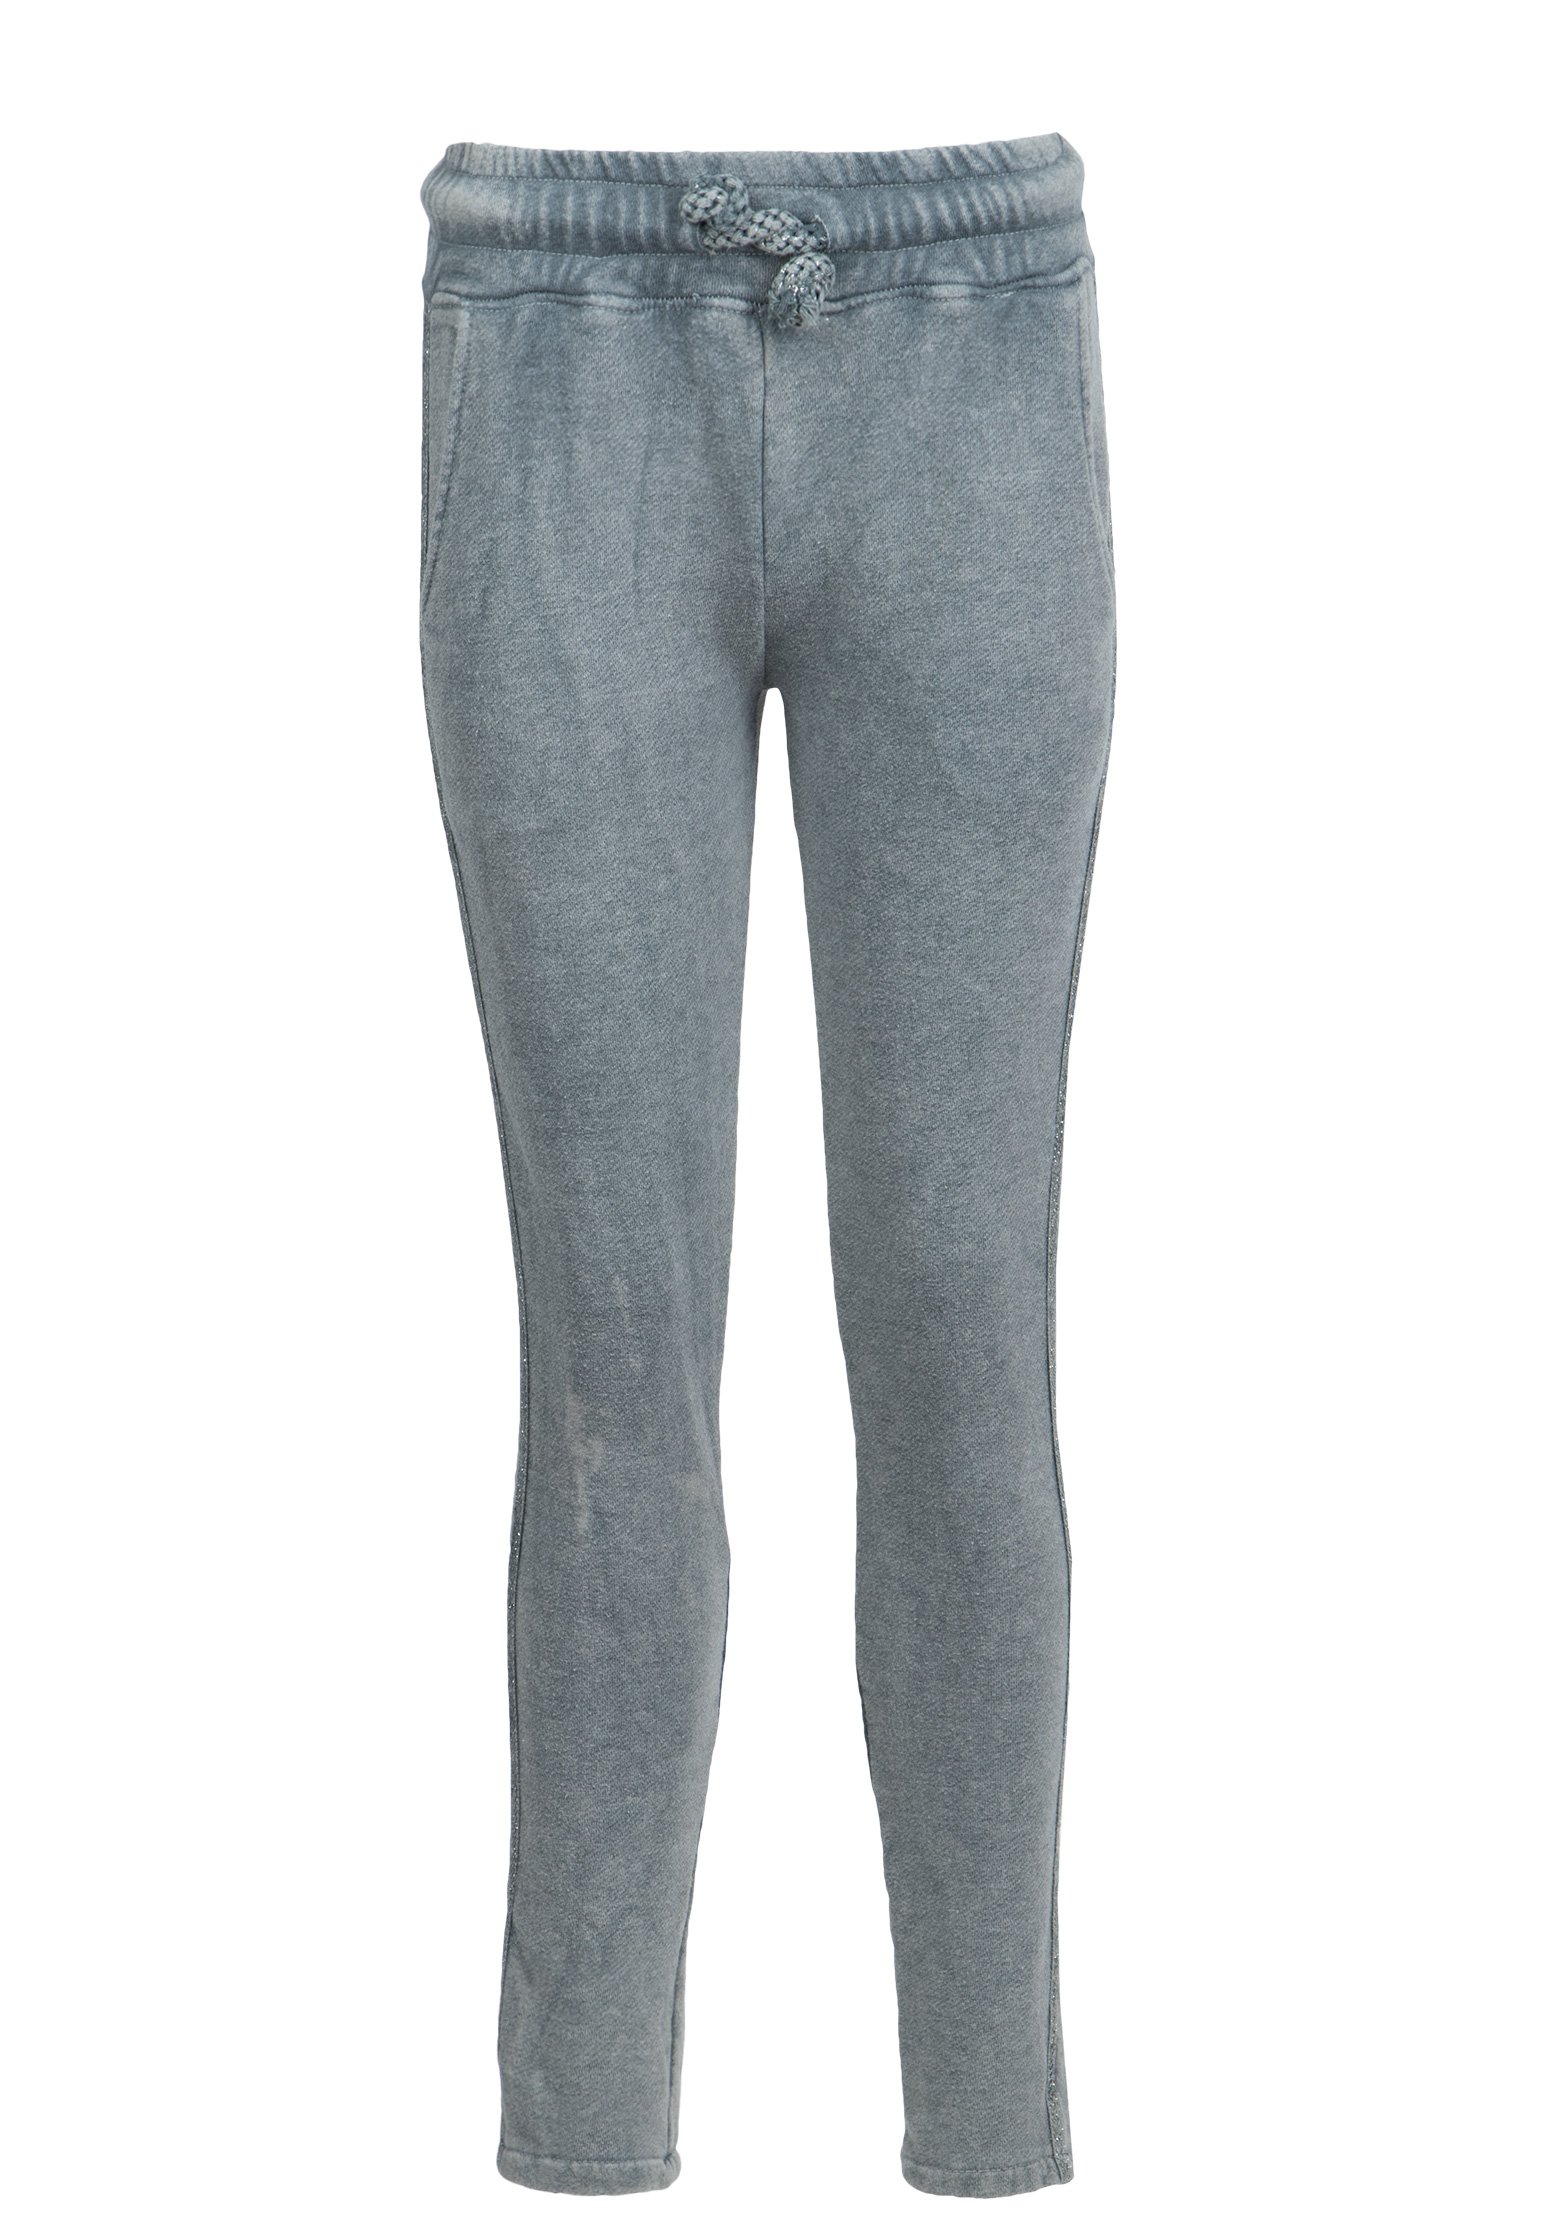 Спортивные брюки женские 107215 серые S VIA TORRIANI 88. Цвет: серый